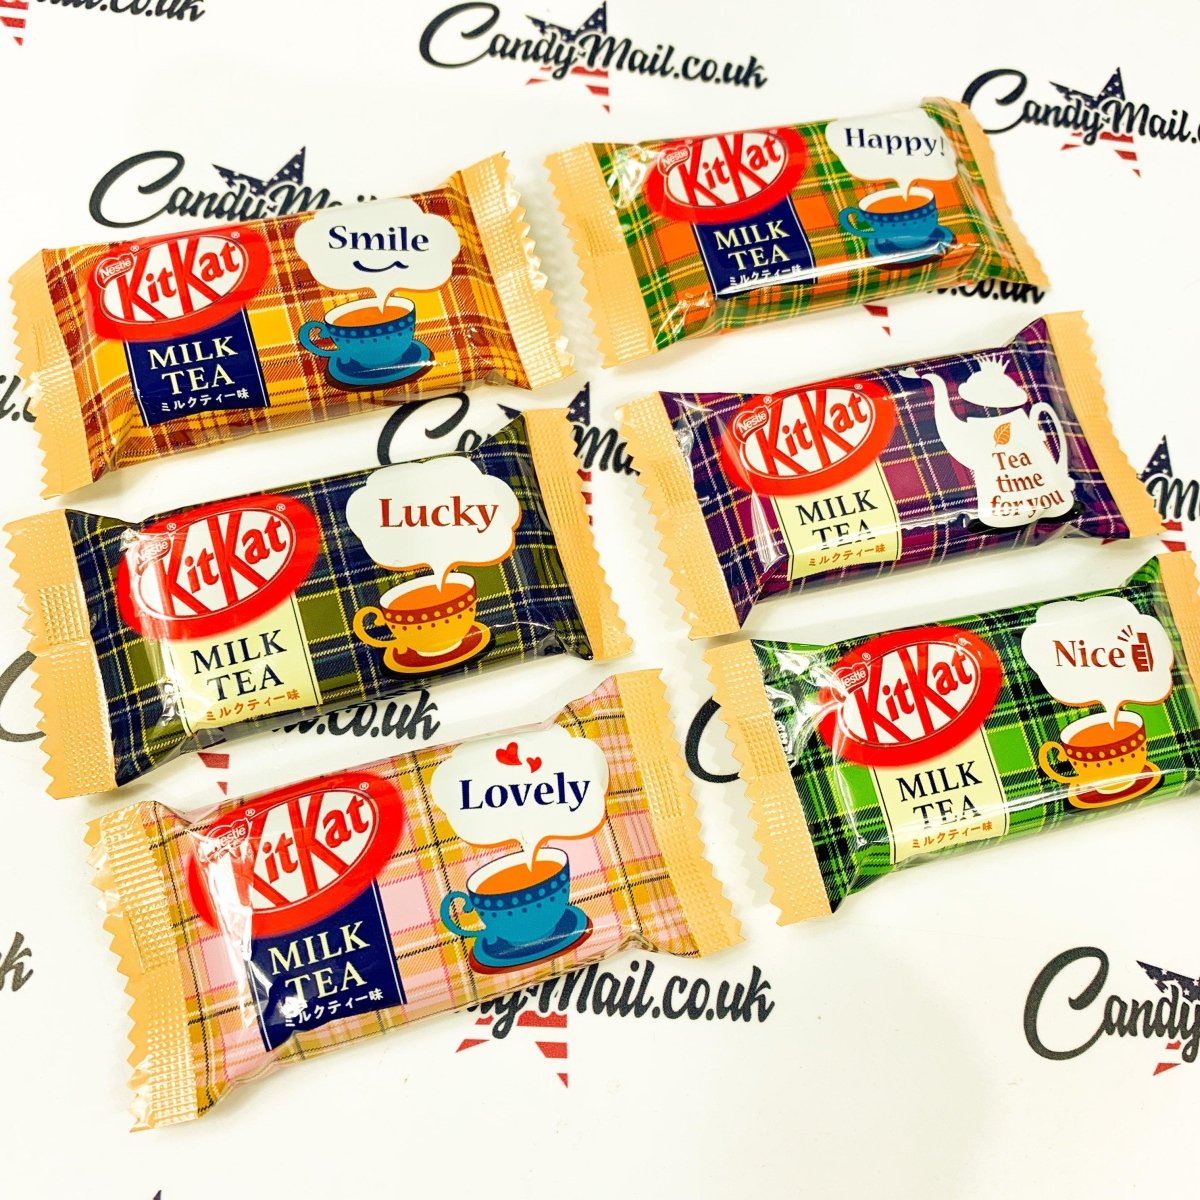 Kit Kat Japan Mini Milk Tea Single - Candy Mail UK